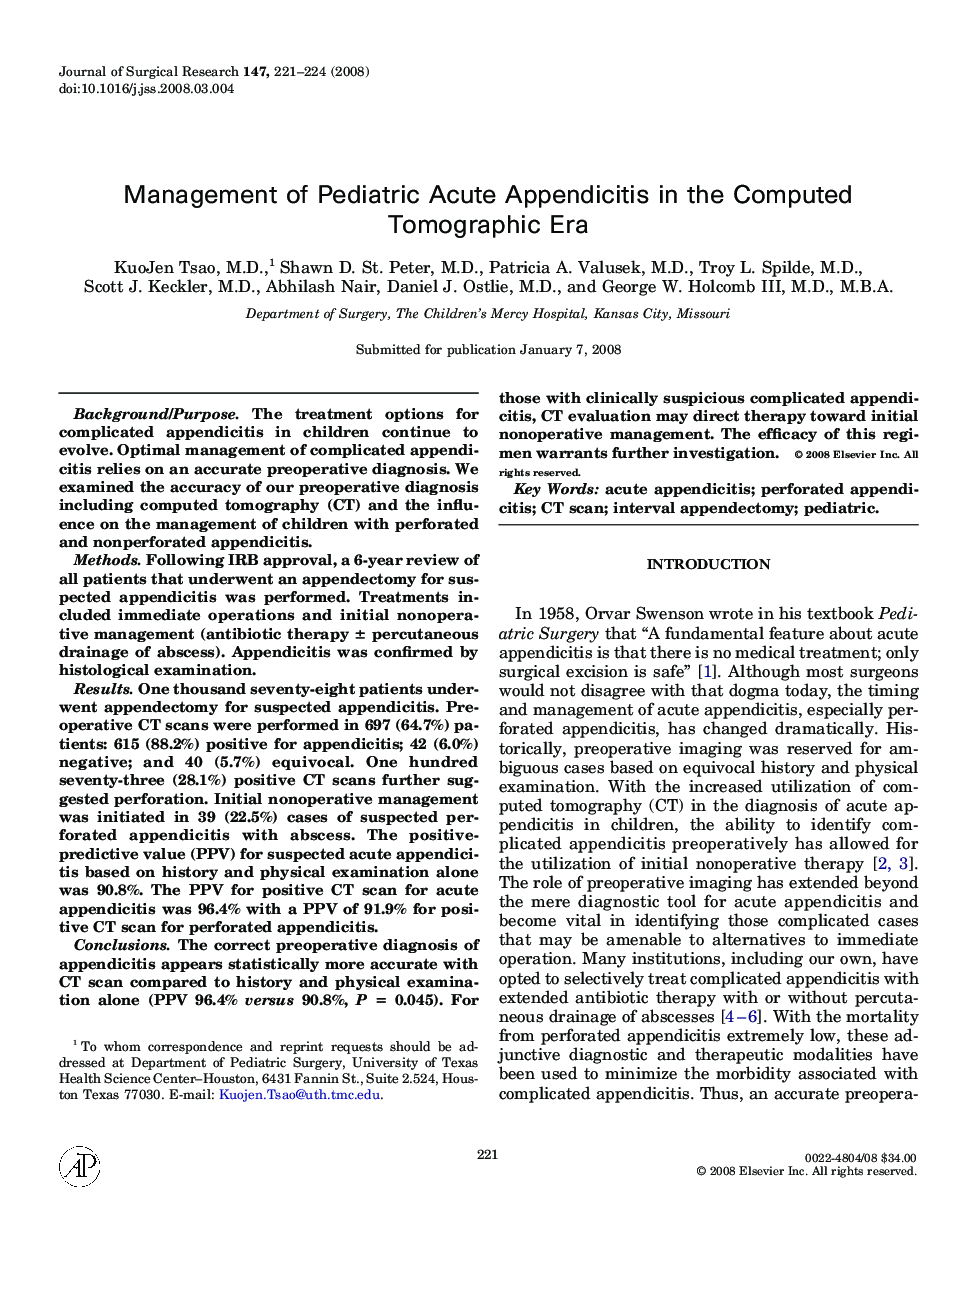 Management of Pediatric Acute Appendicitis in the Computed Tomographic Era